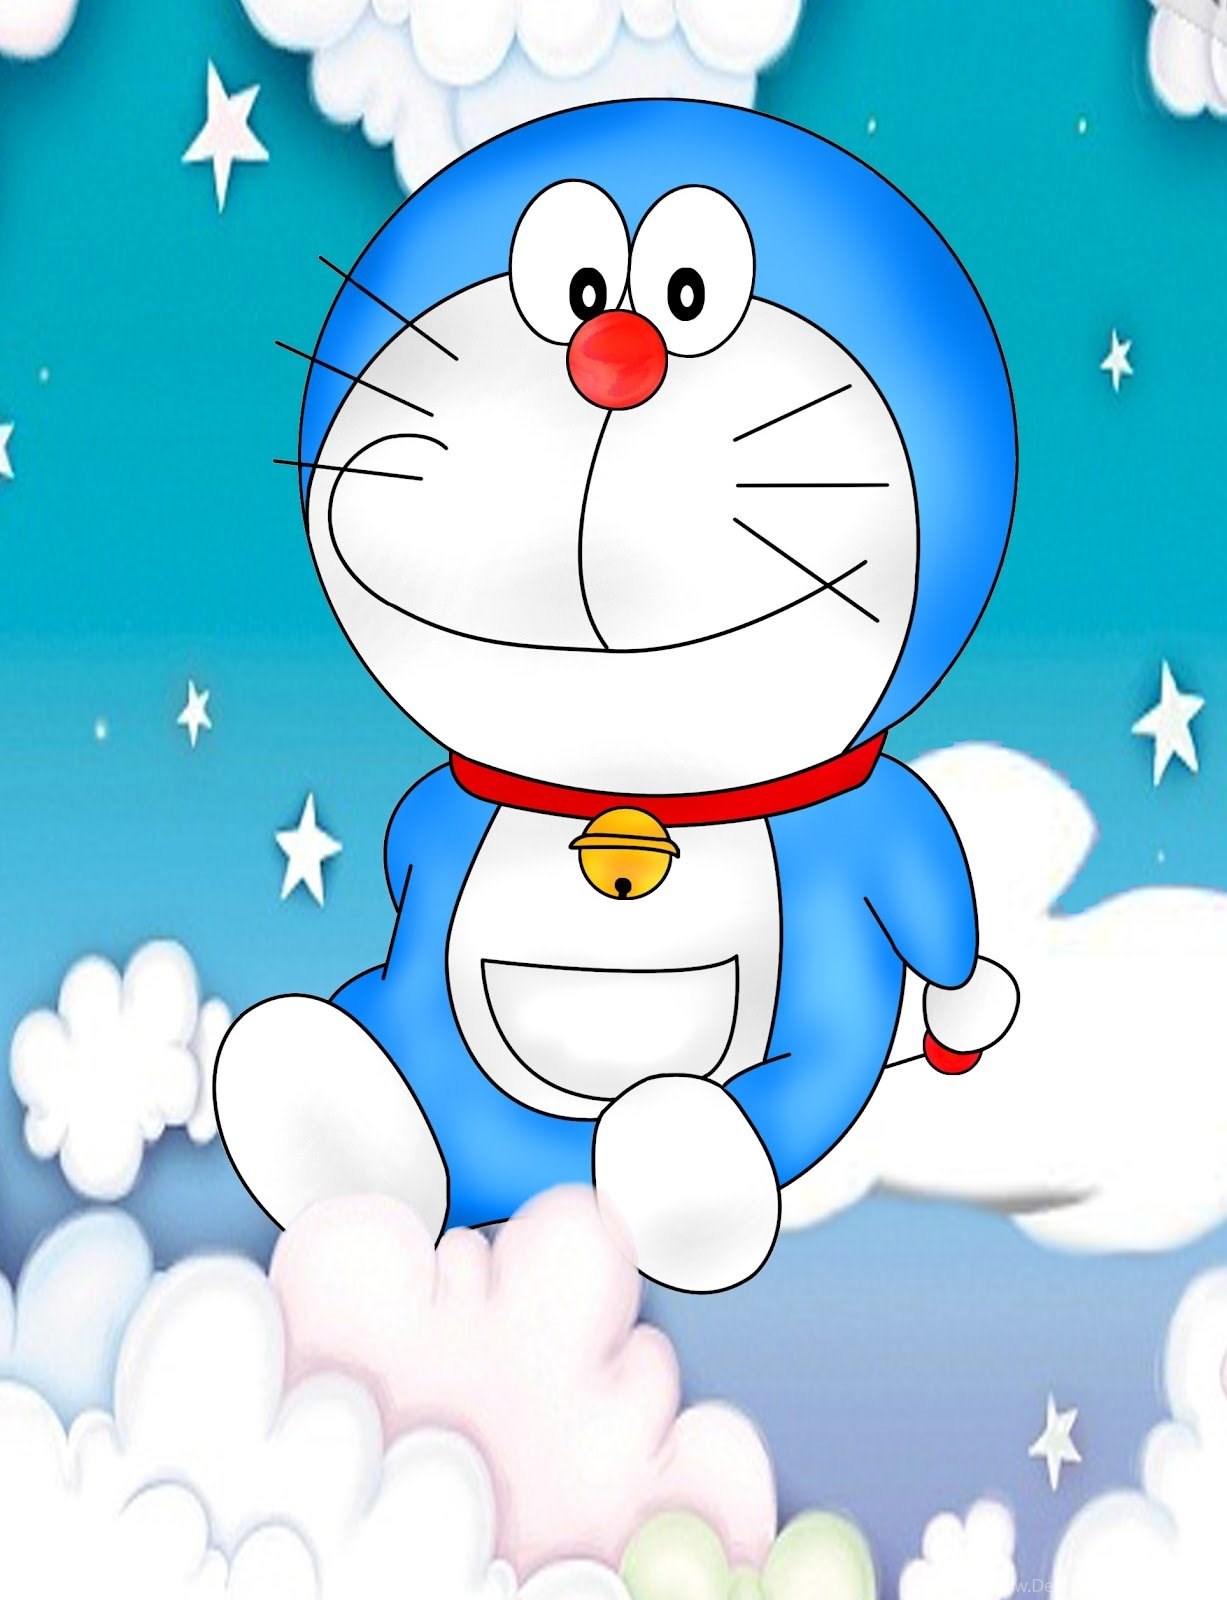 Gambar Wallpaper Hp Doraemon gambar ke 10